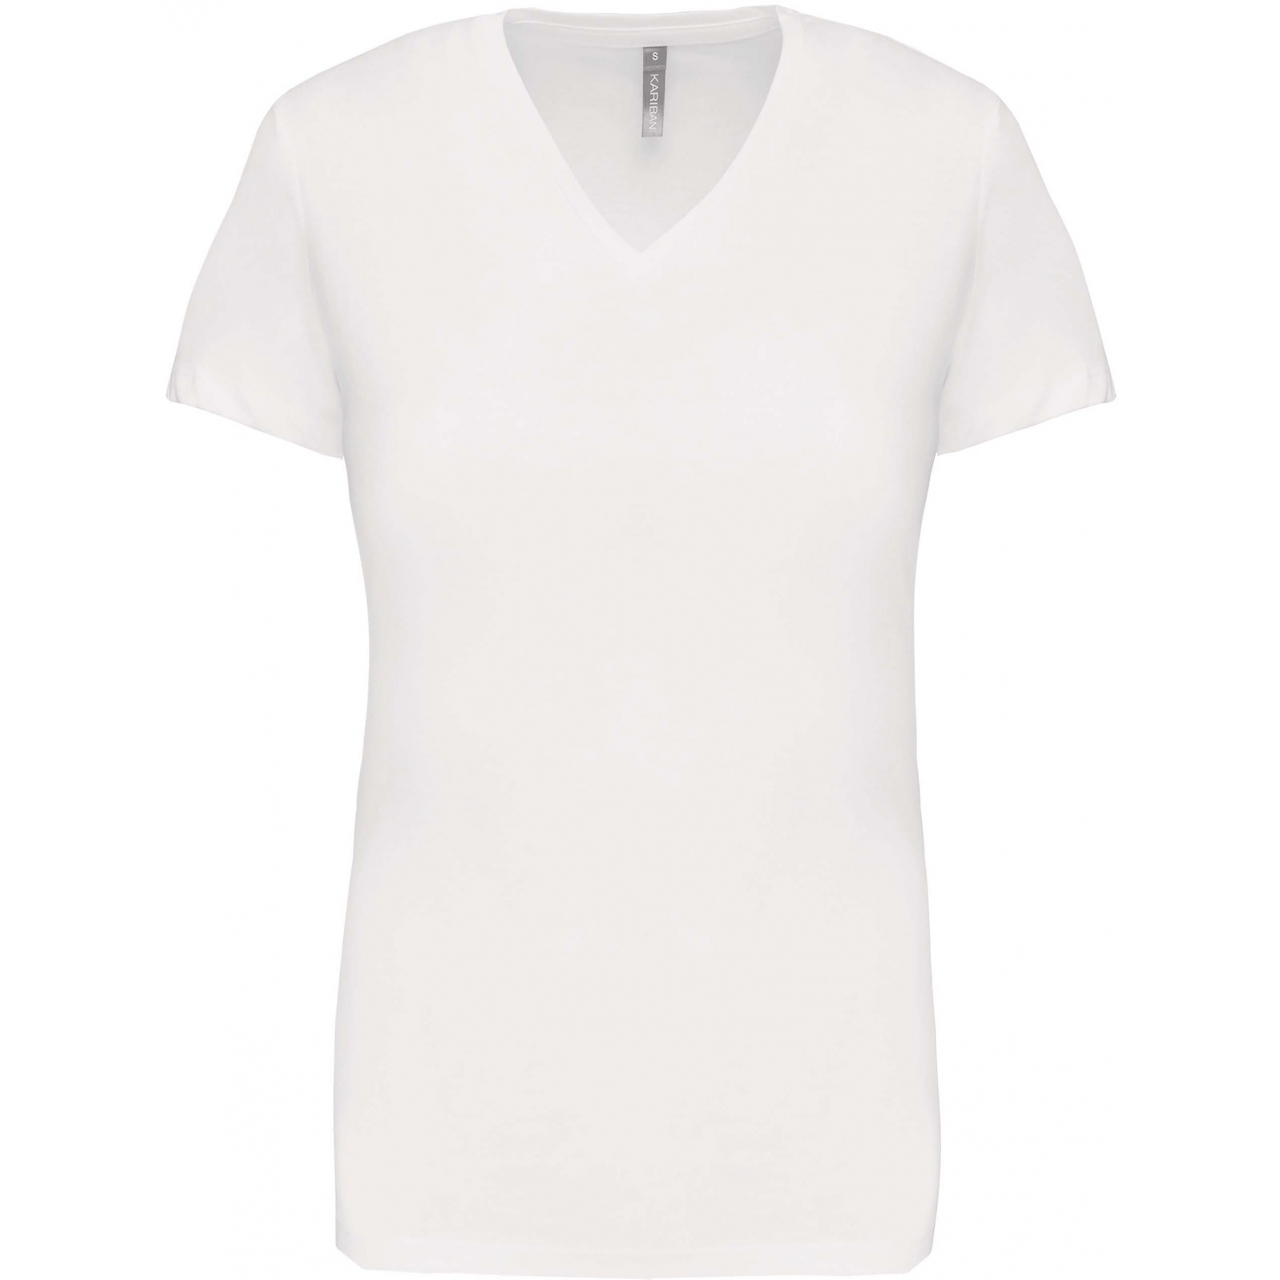 Dámské tričko Kariban V-neck s krátkým rukávem - bílé, L